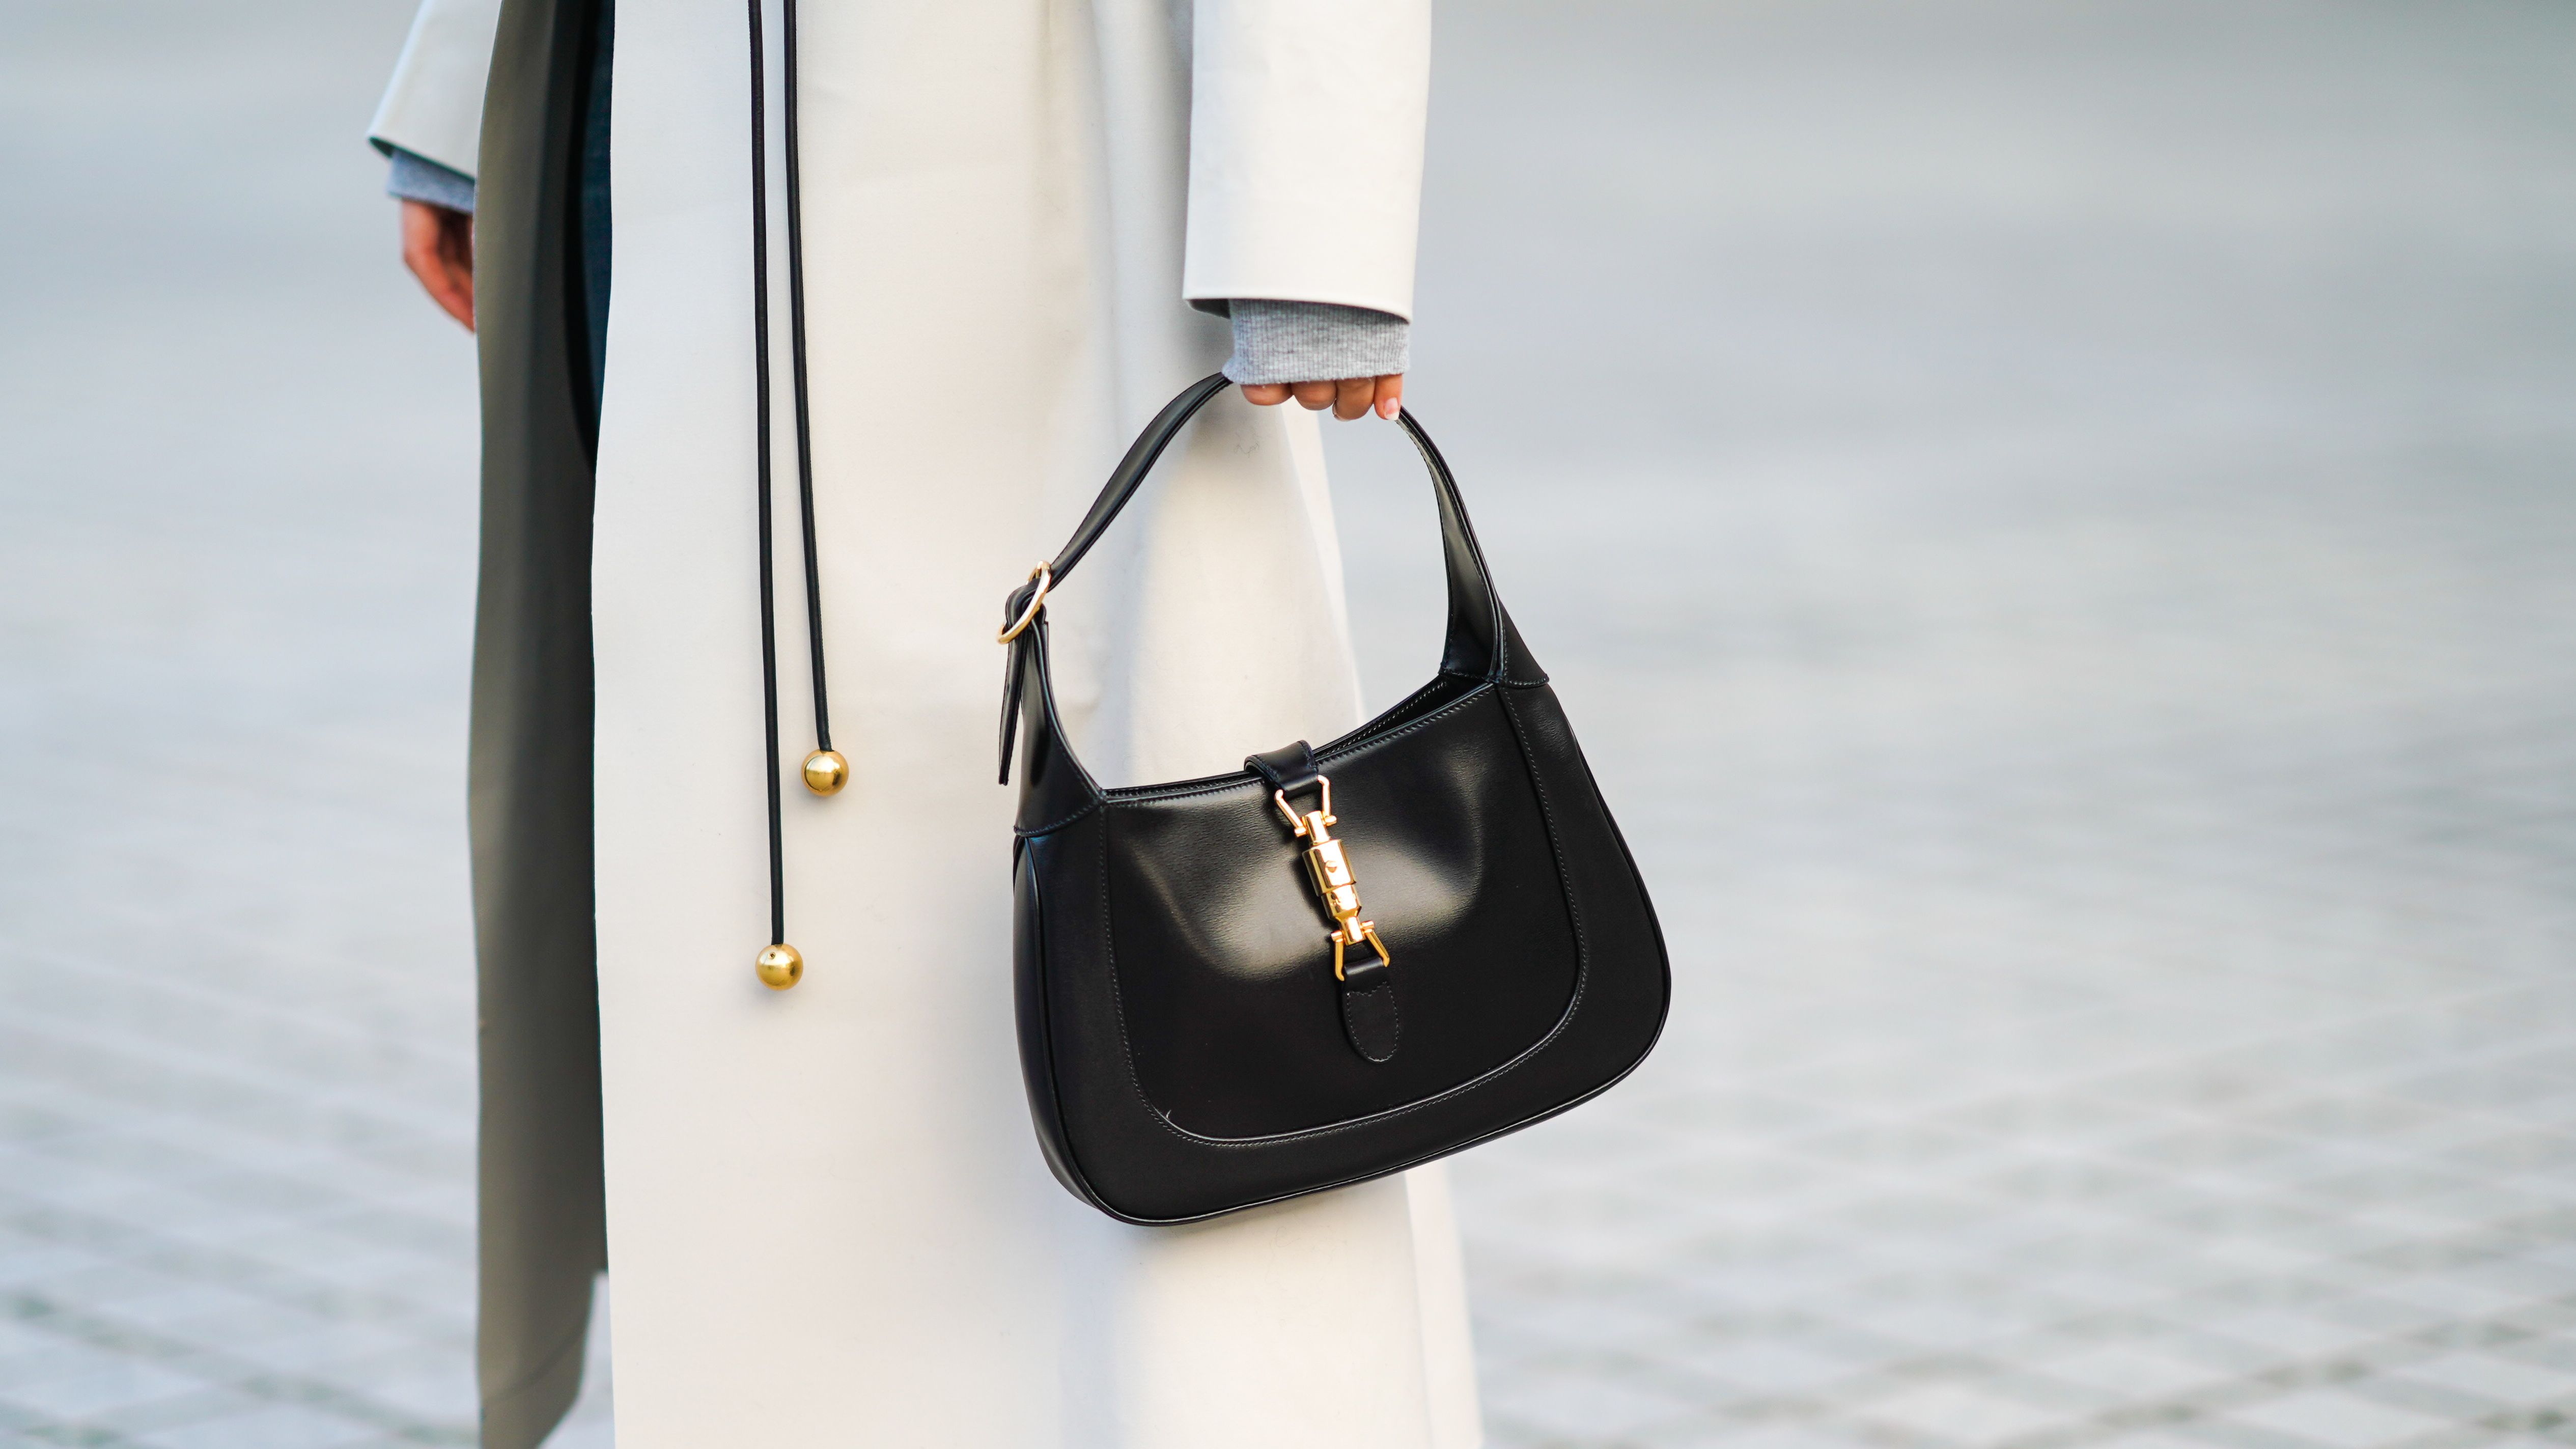 Come riconoscere una borsa Louis Vuitton originale - Fashion News Magazine